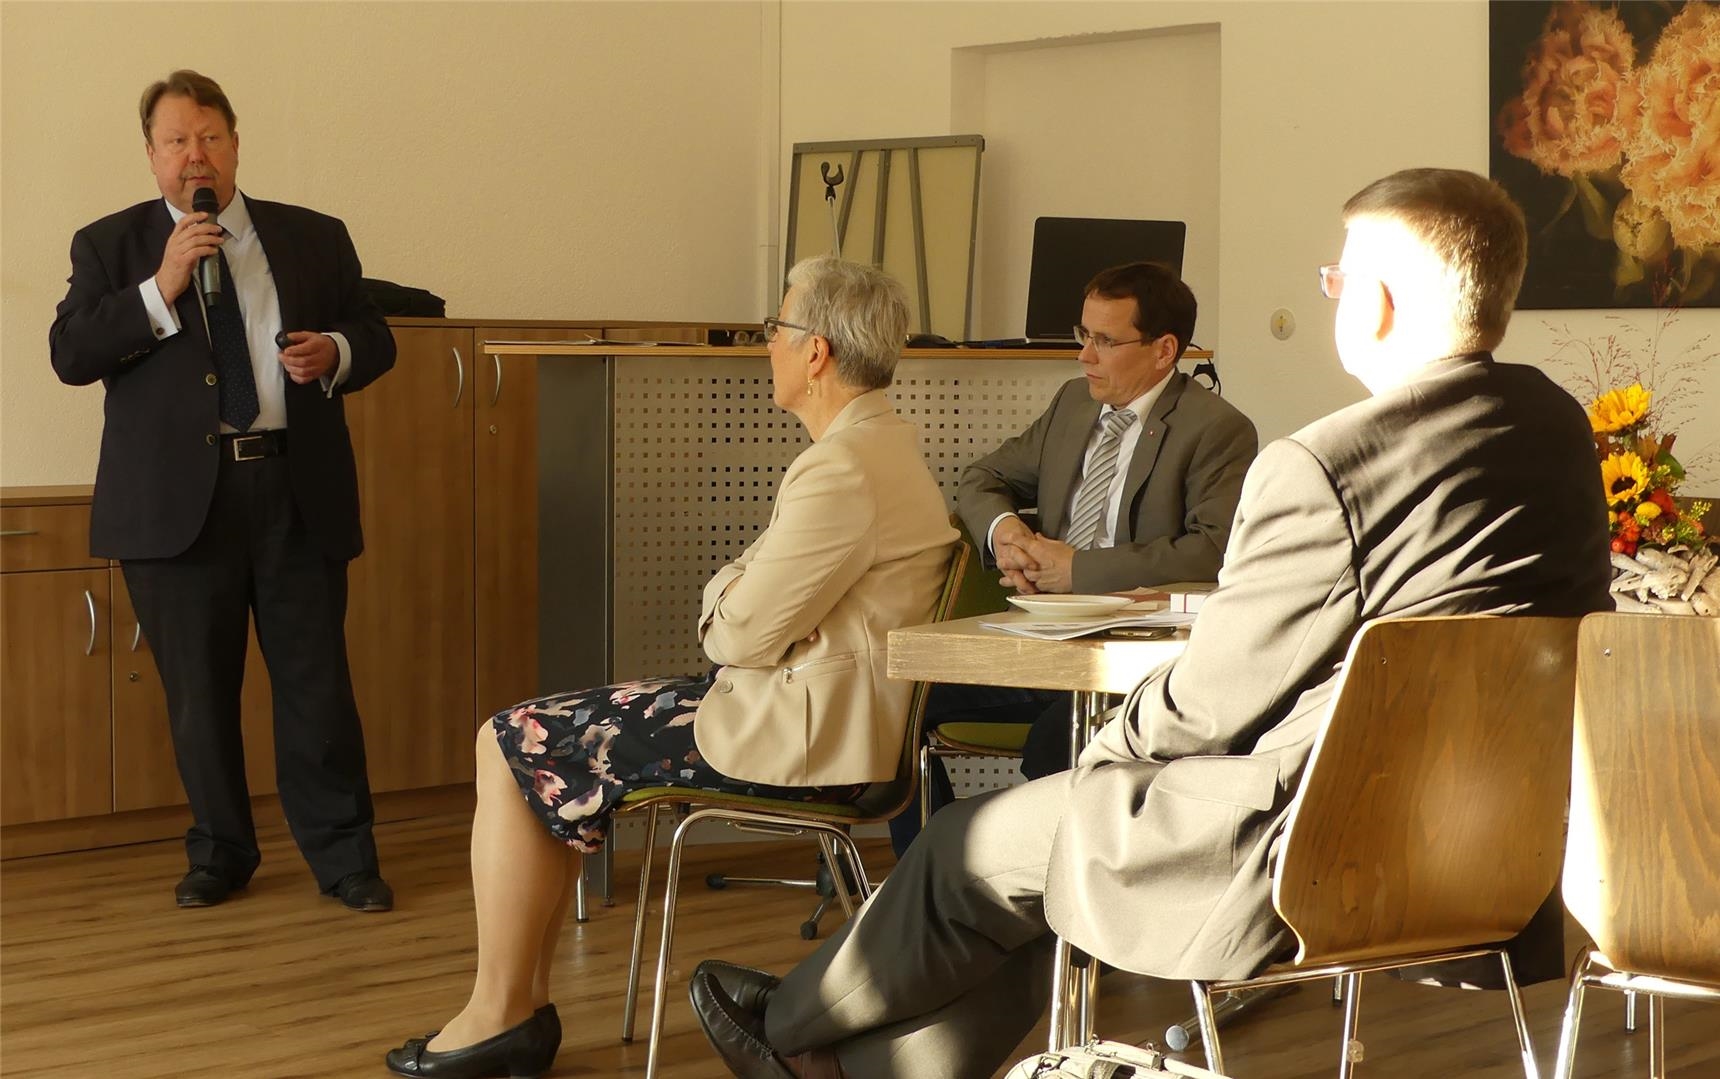 Ein Mann hält vor einer Gruppe einen Vortrag (Foto: Caritasverband Offenbach e.V.)